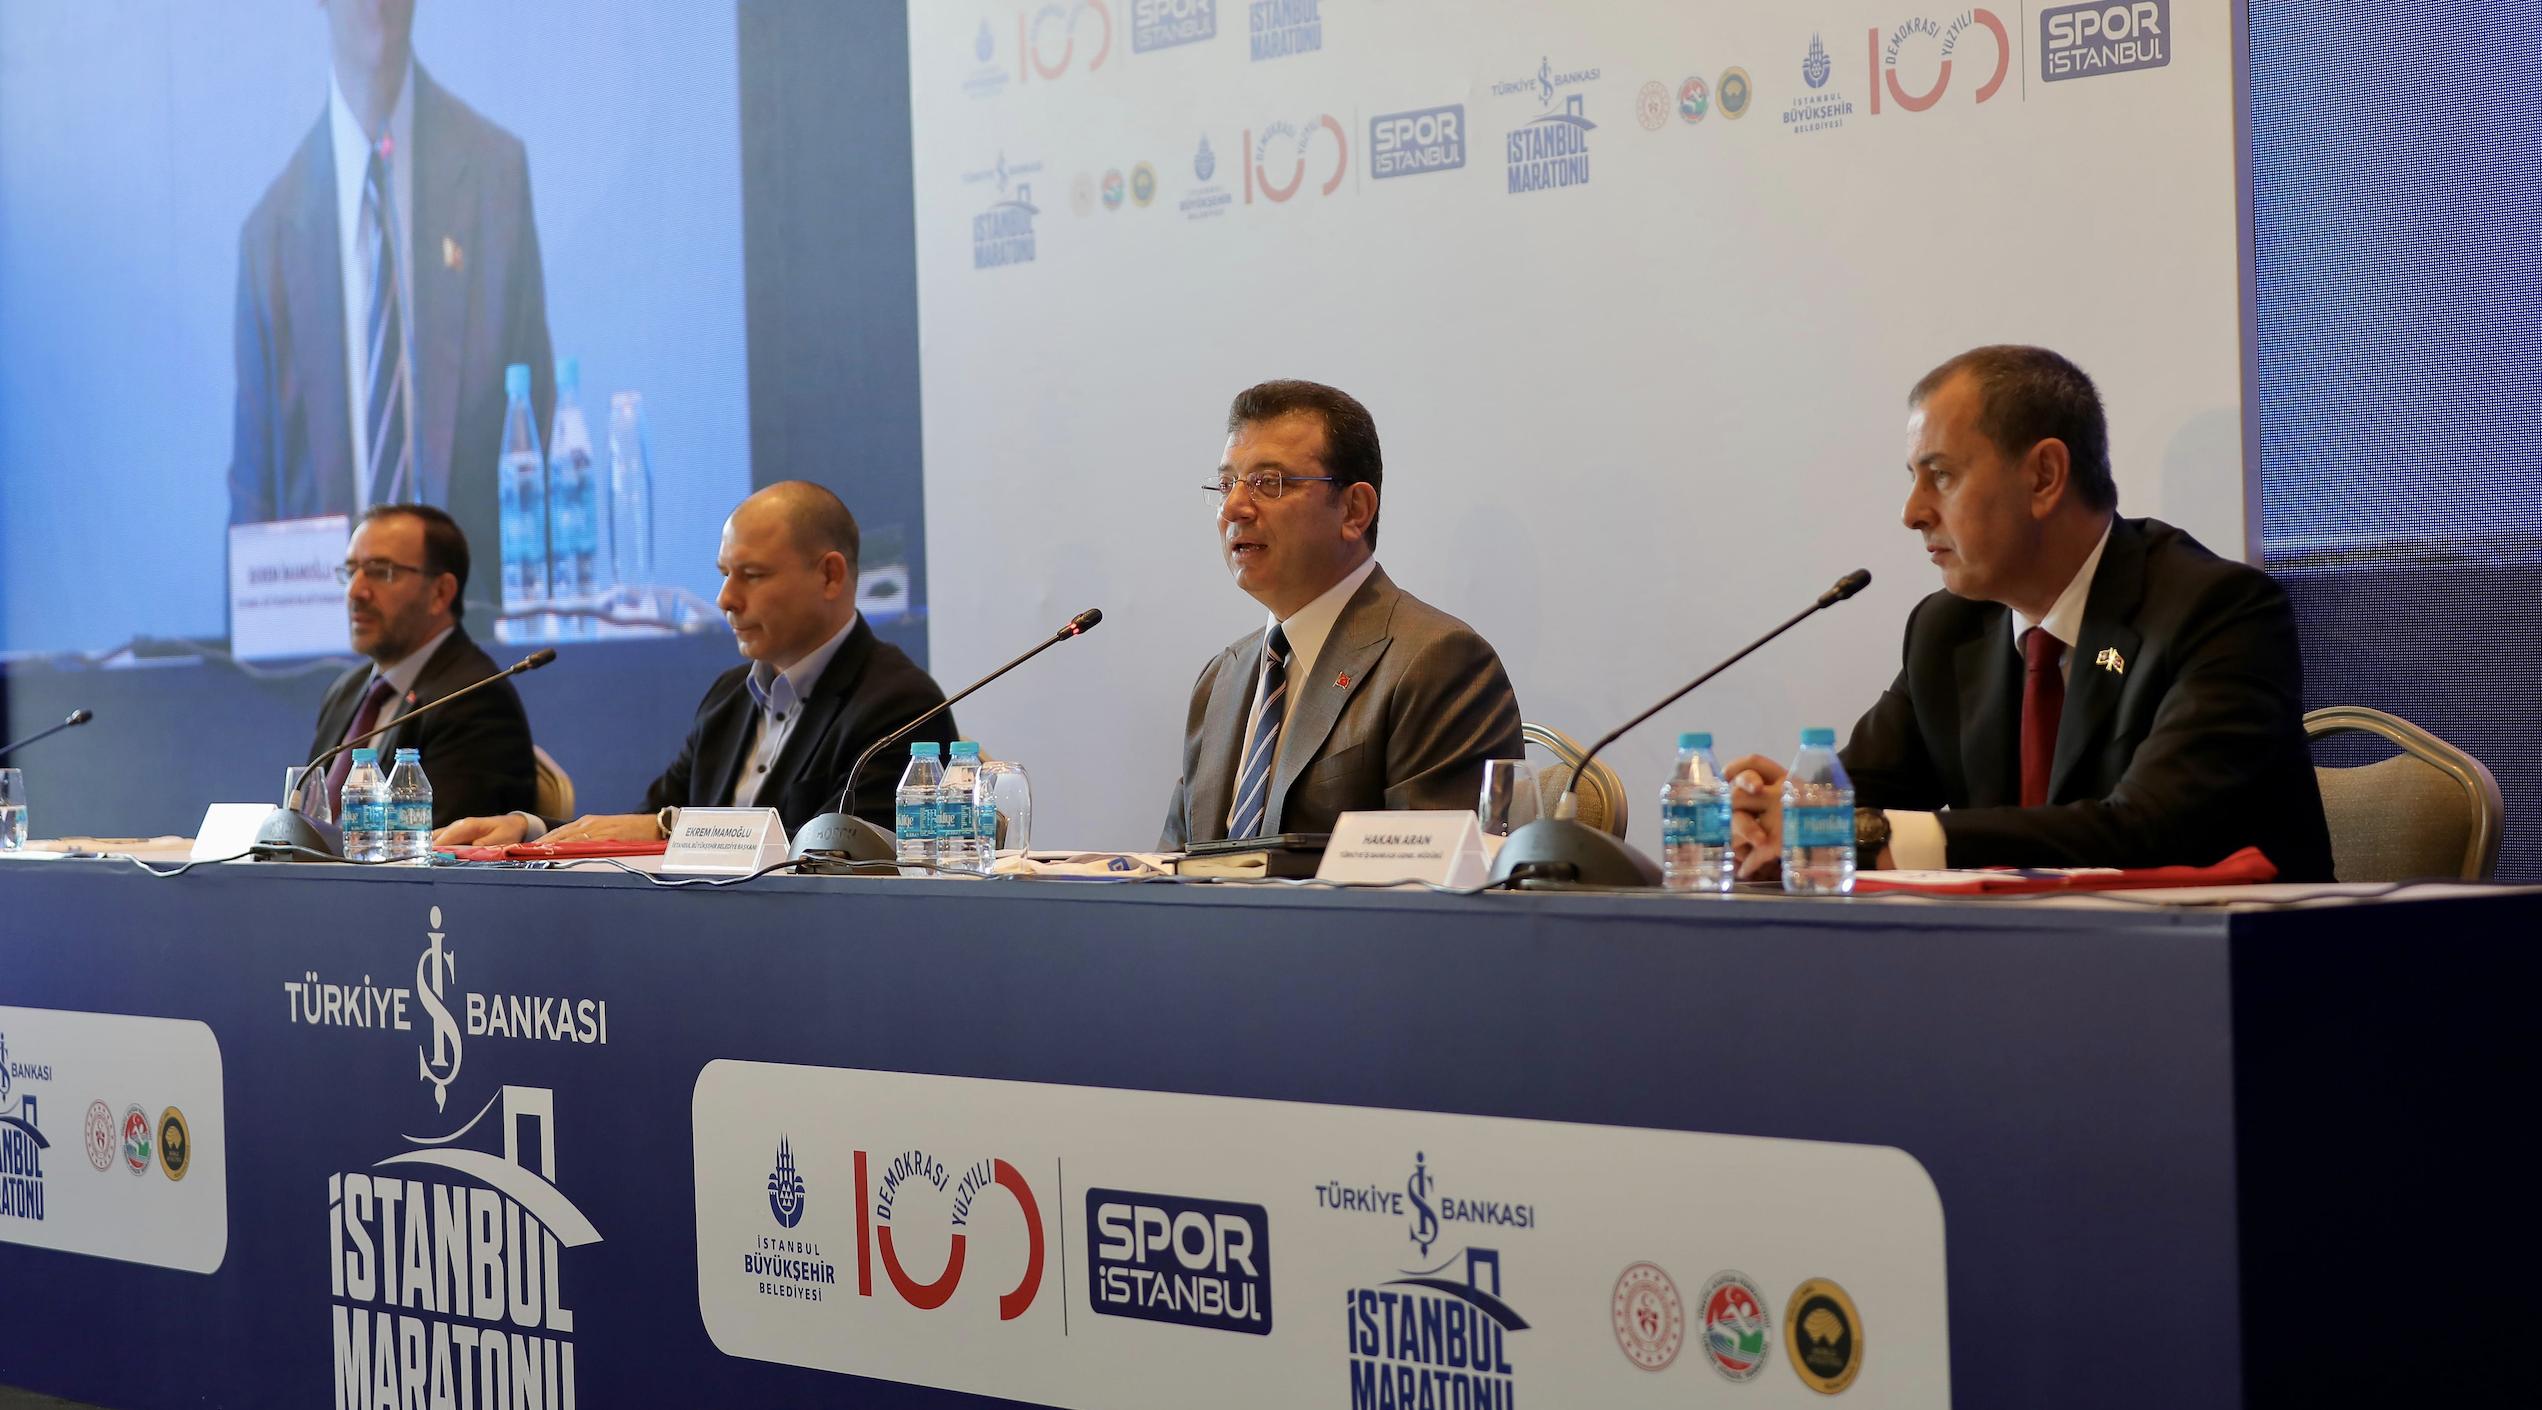 45. İstanbul Maratonu Türkiye İş Bankası sponsorluğunda koşulacak